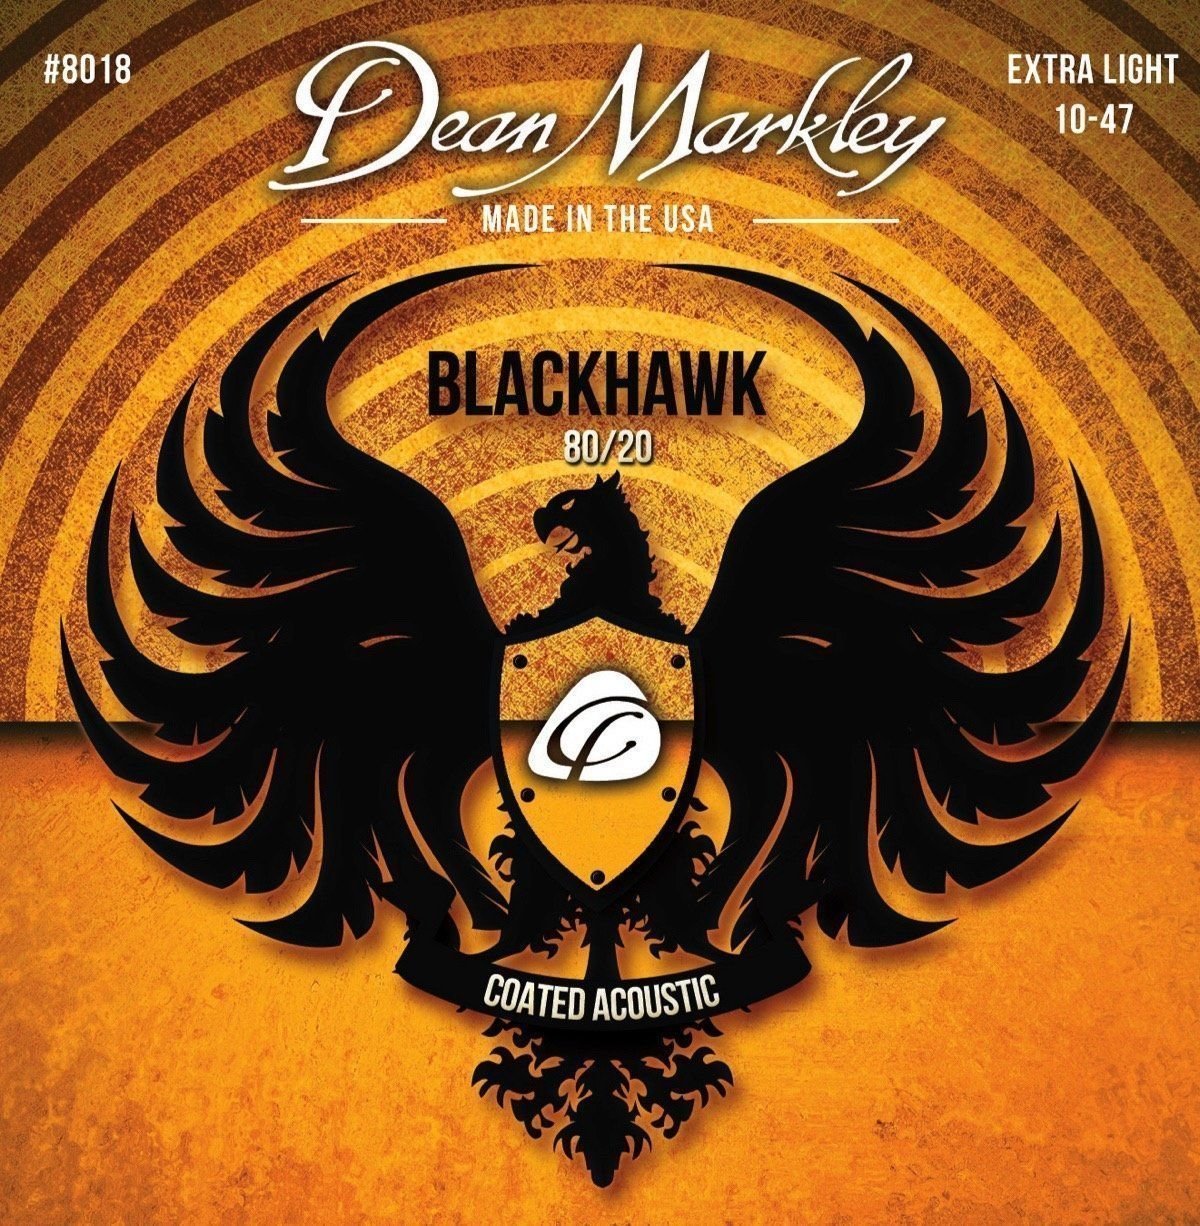 Dean Markley 8018 Blackhawk 80/20 10-47 Dean Markley